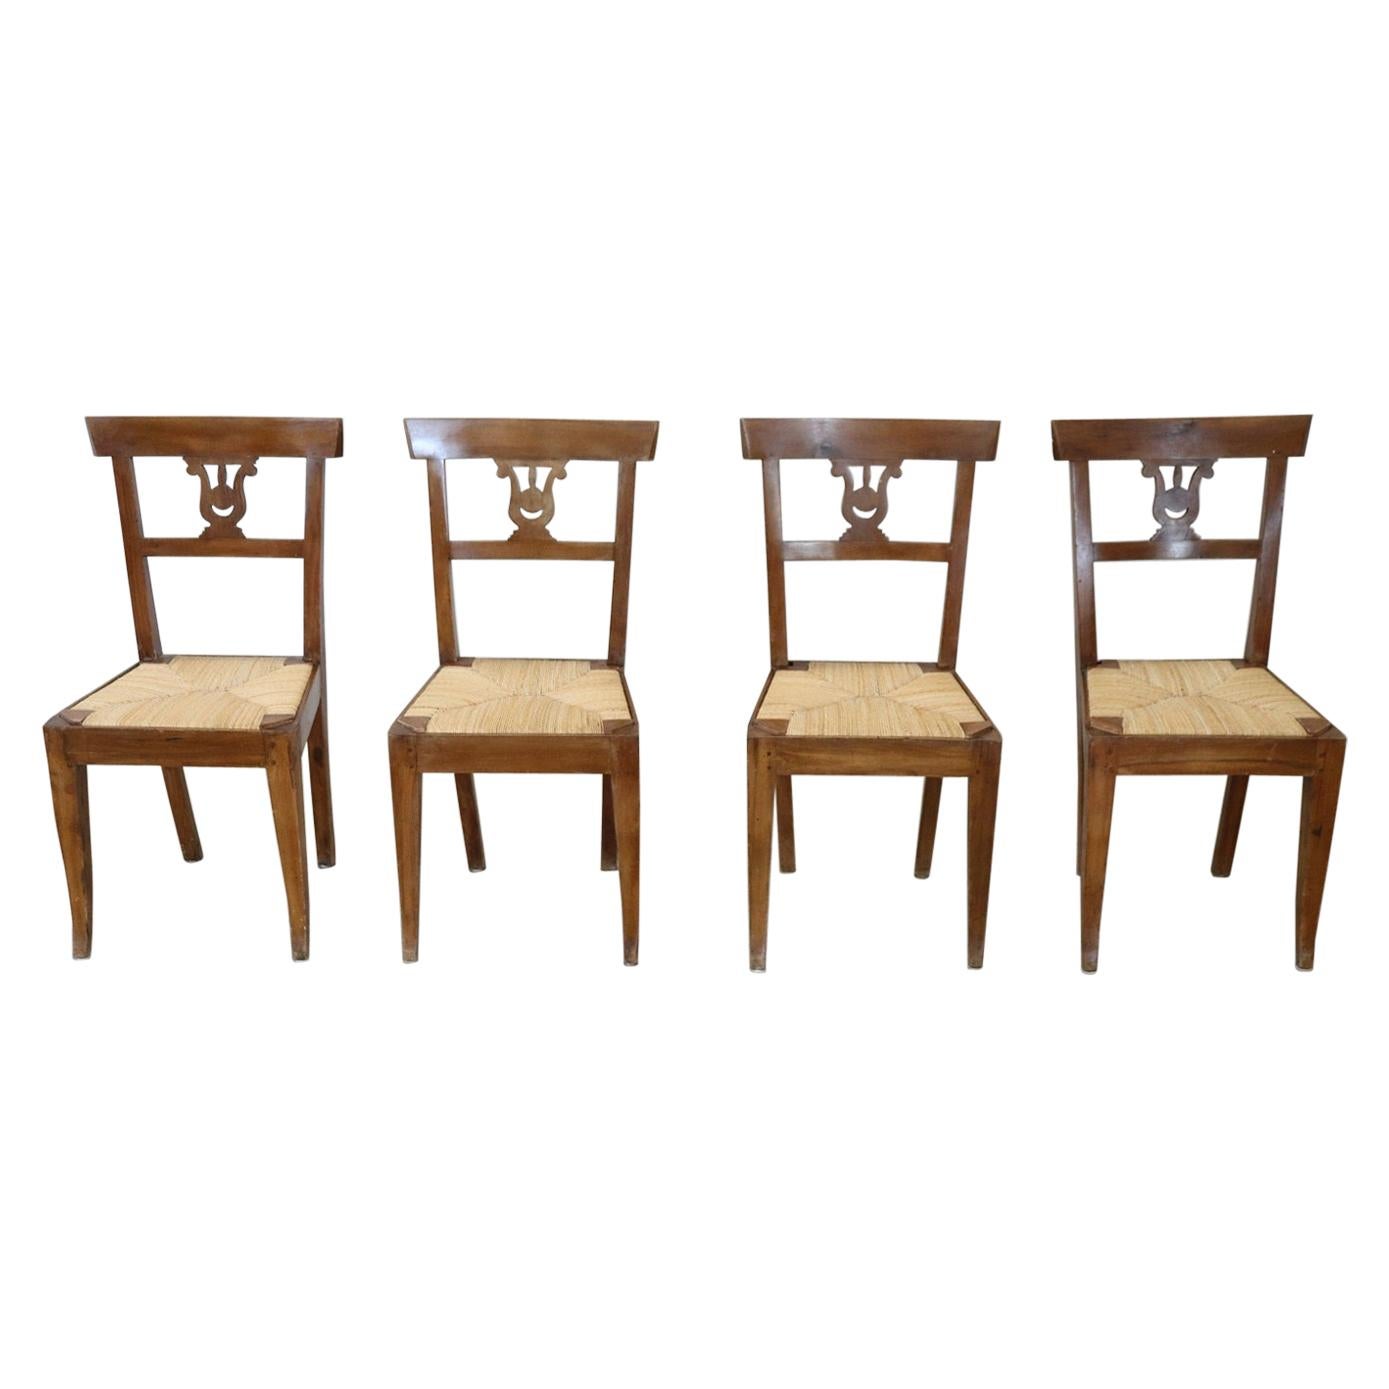 Quatre chaises anciennes en bois de noyer sculpté de style Empire italien du début du XIXe siècle en vente